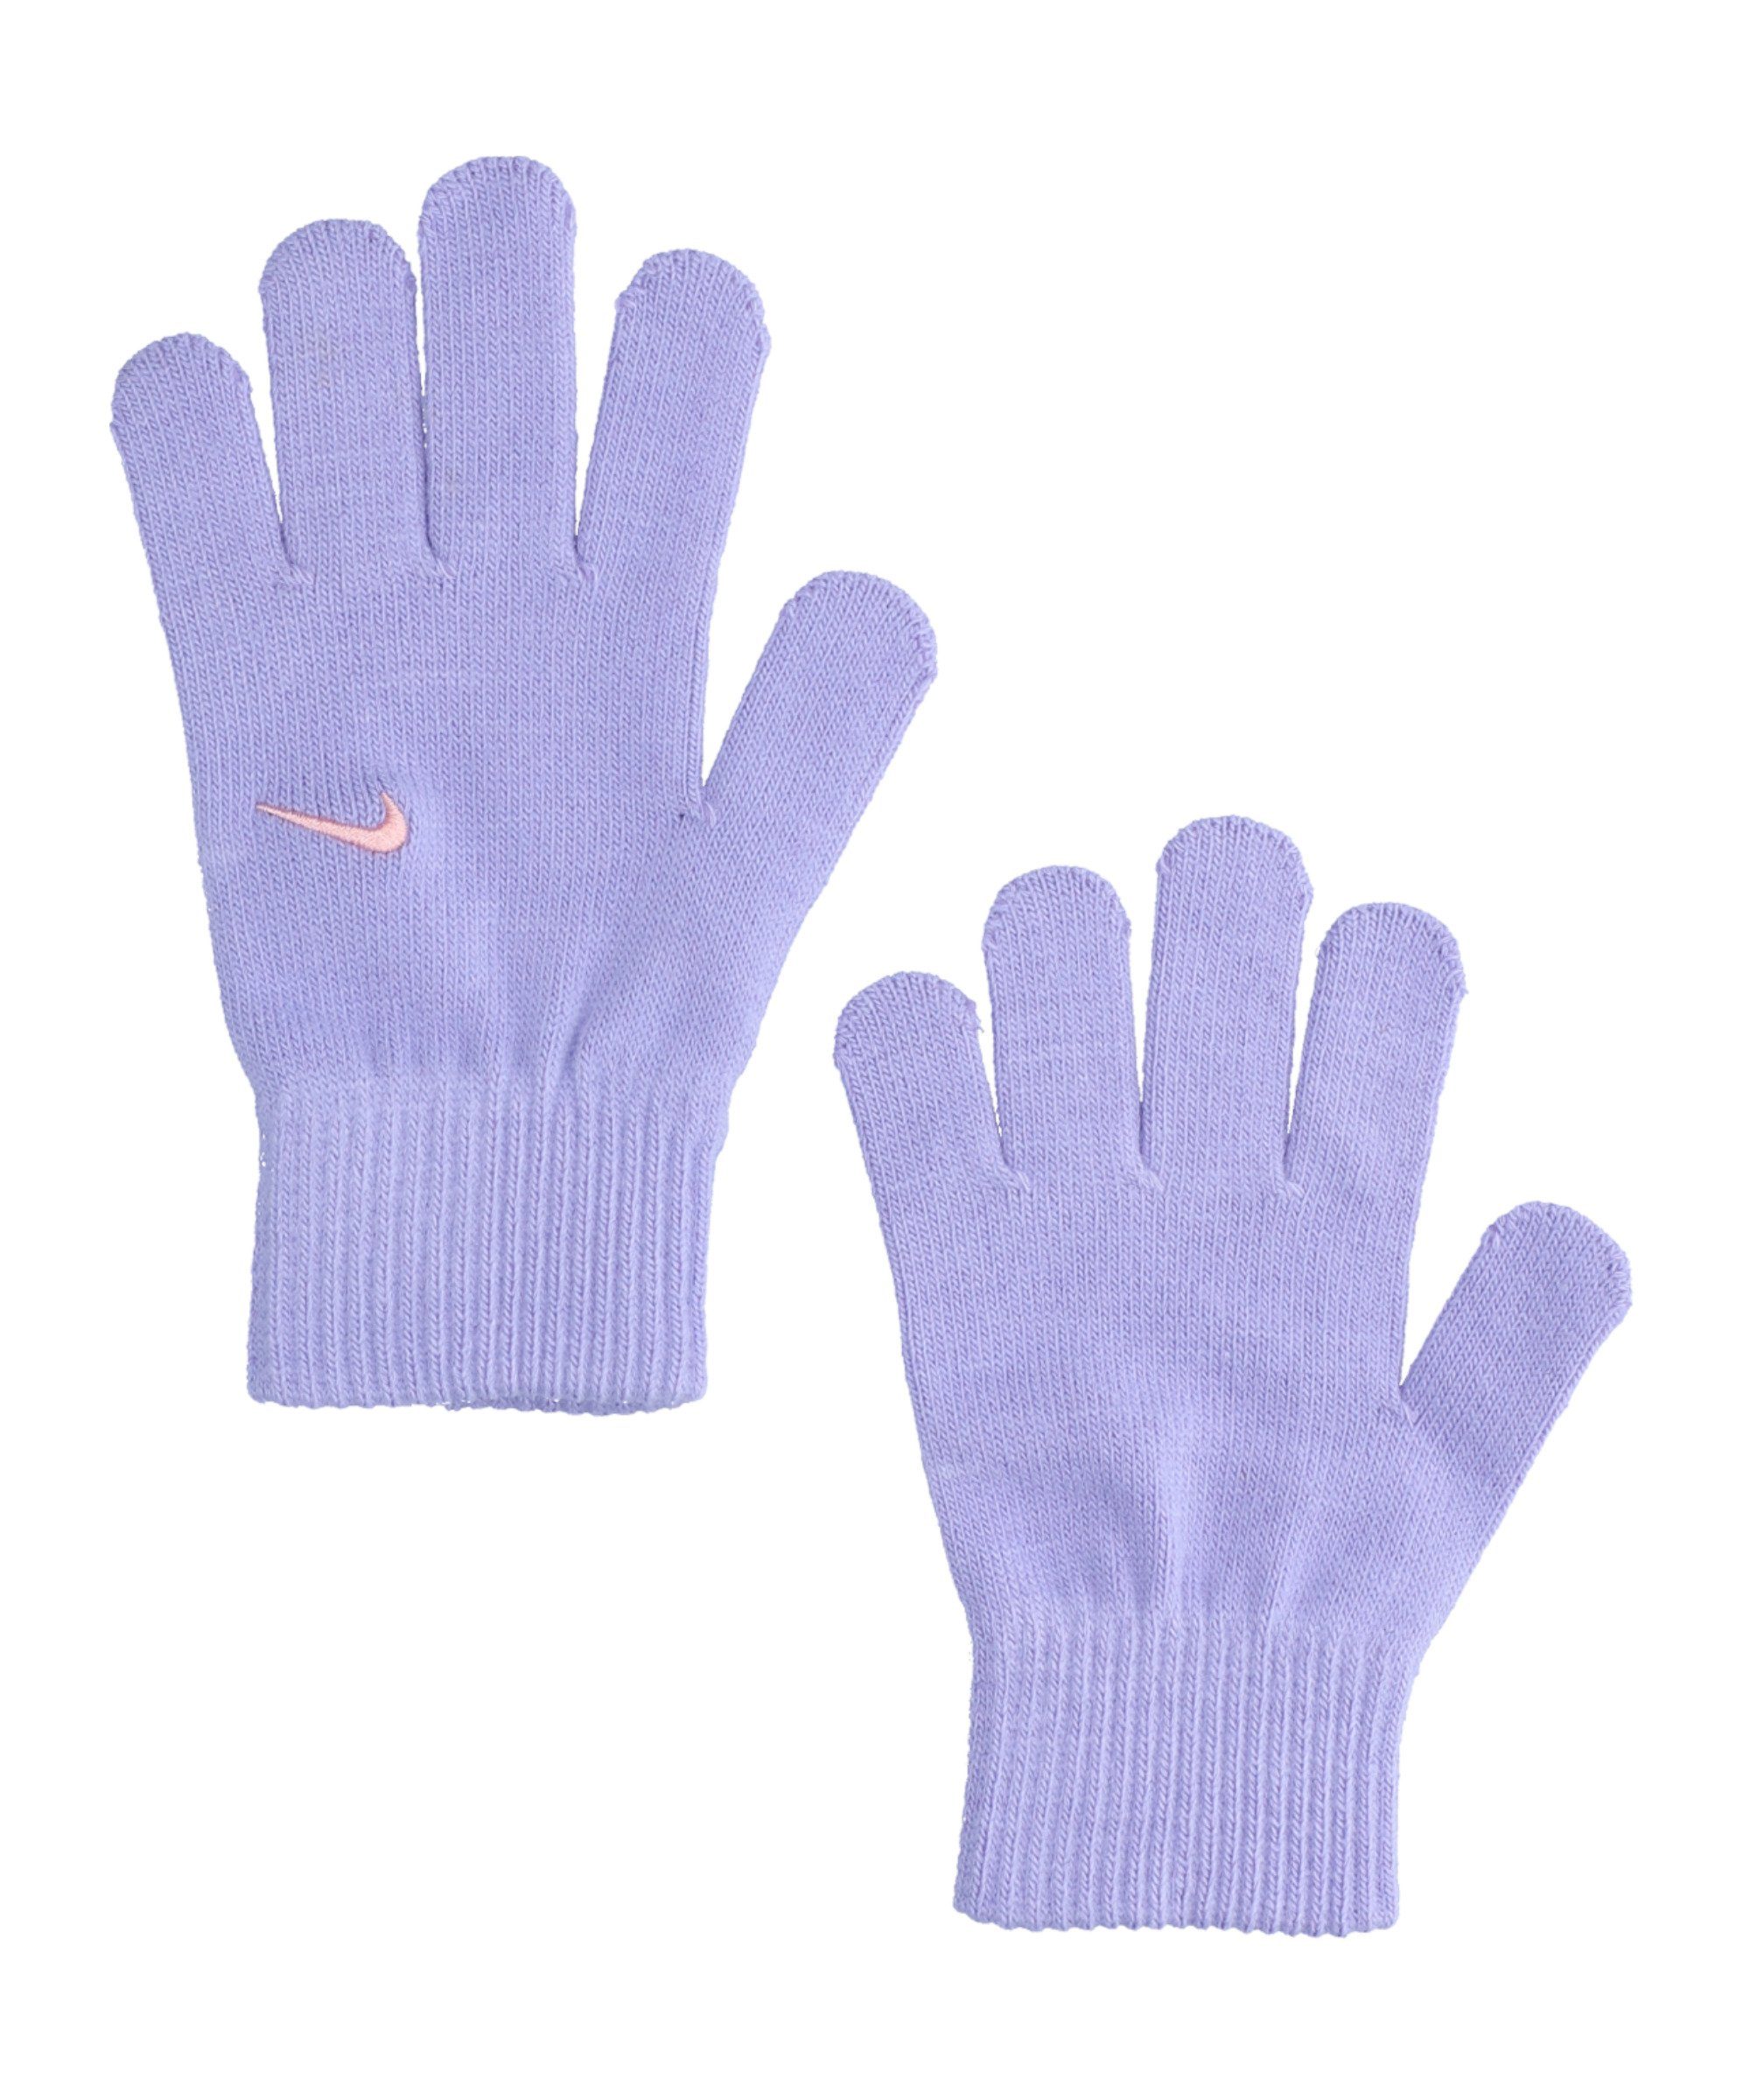 Handschuhe Feldspielerhandschuhe Kids Knit 2.0 Swoosh Nike lila